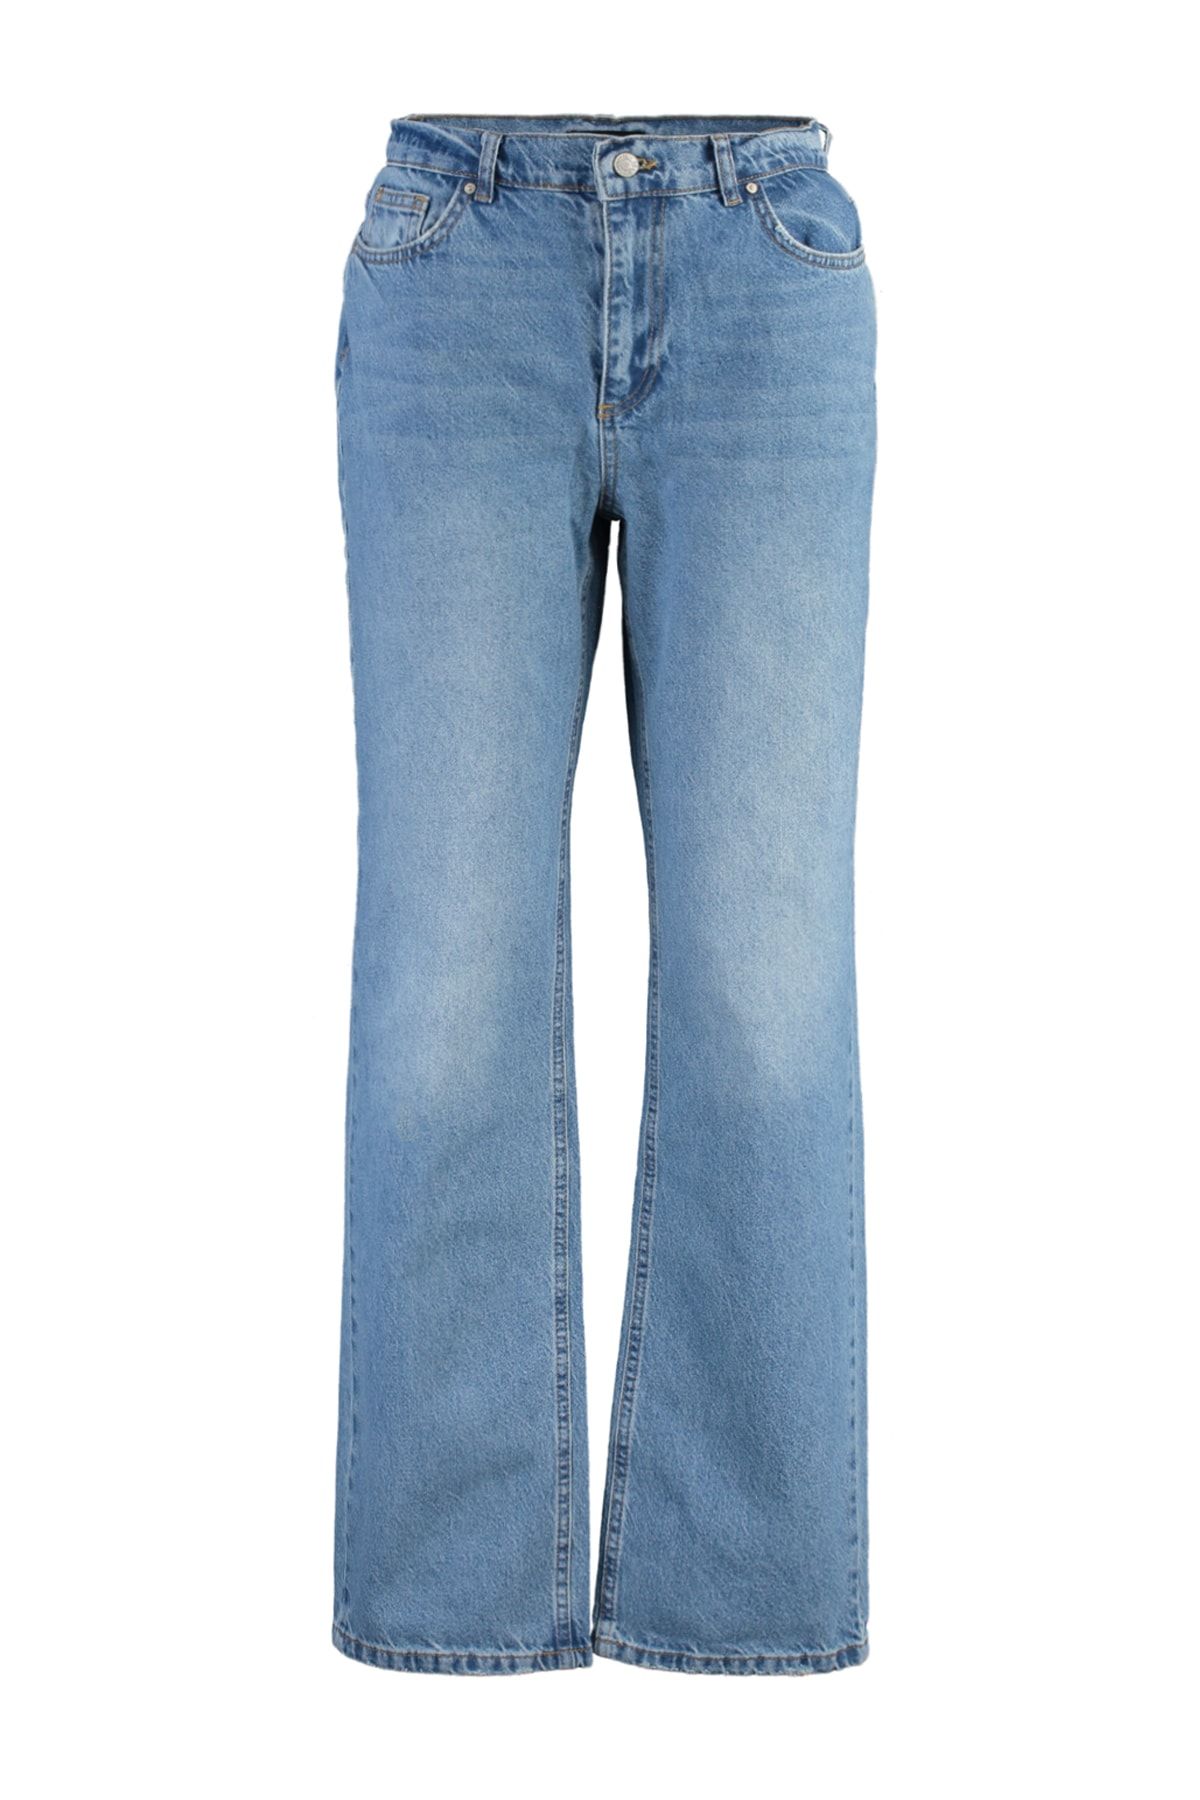 Calça Jeans Trendyol Collection Flare Estonada Azul